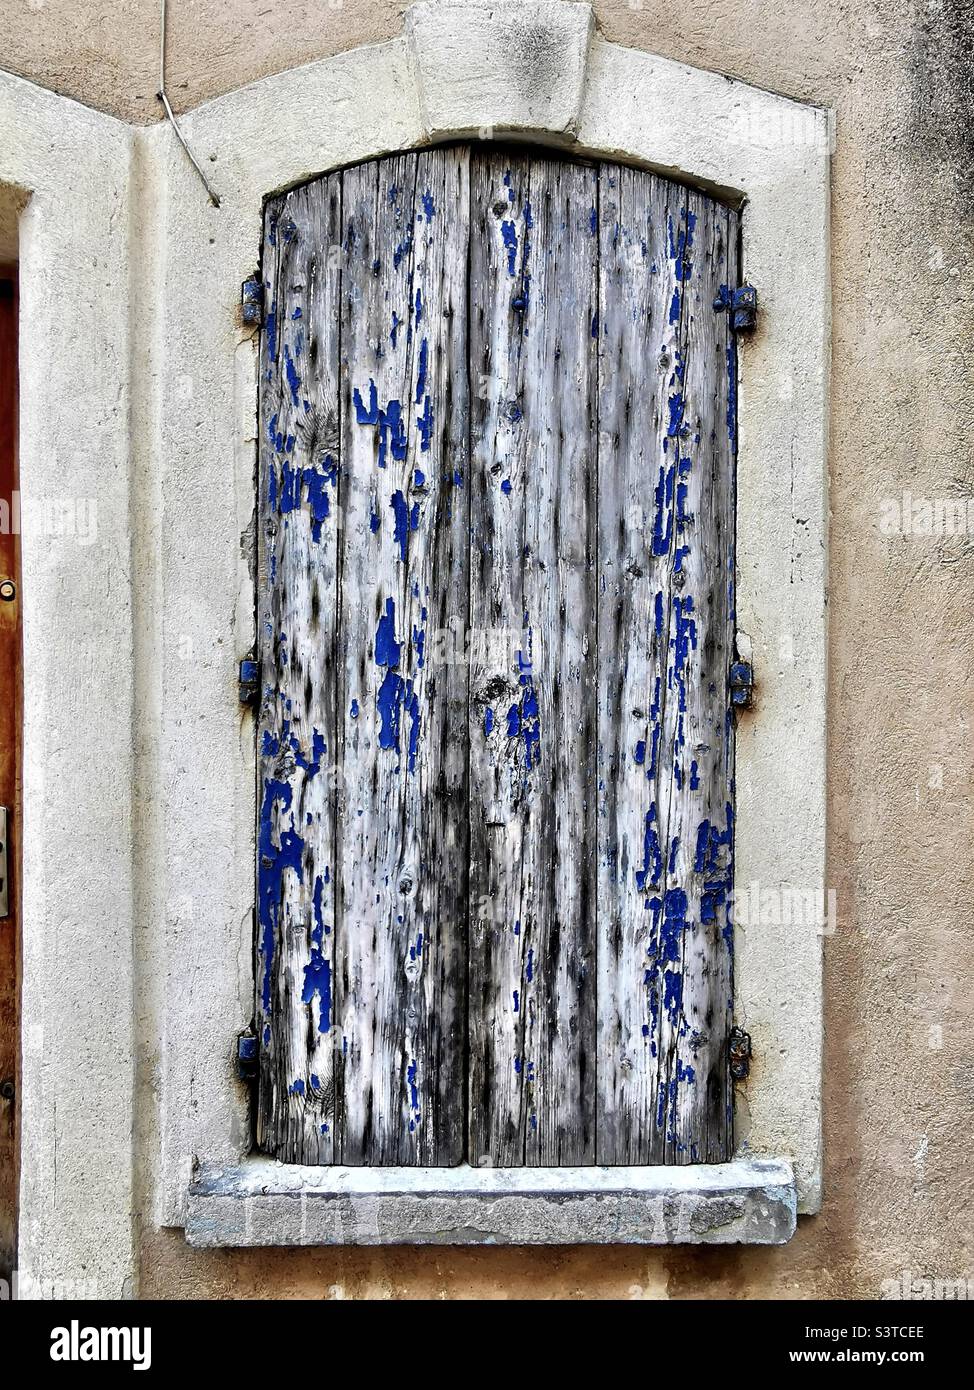 blu rundown wooden window shutters in France Stock Photo